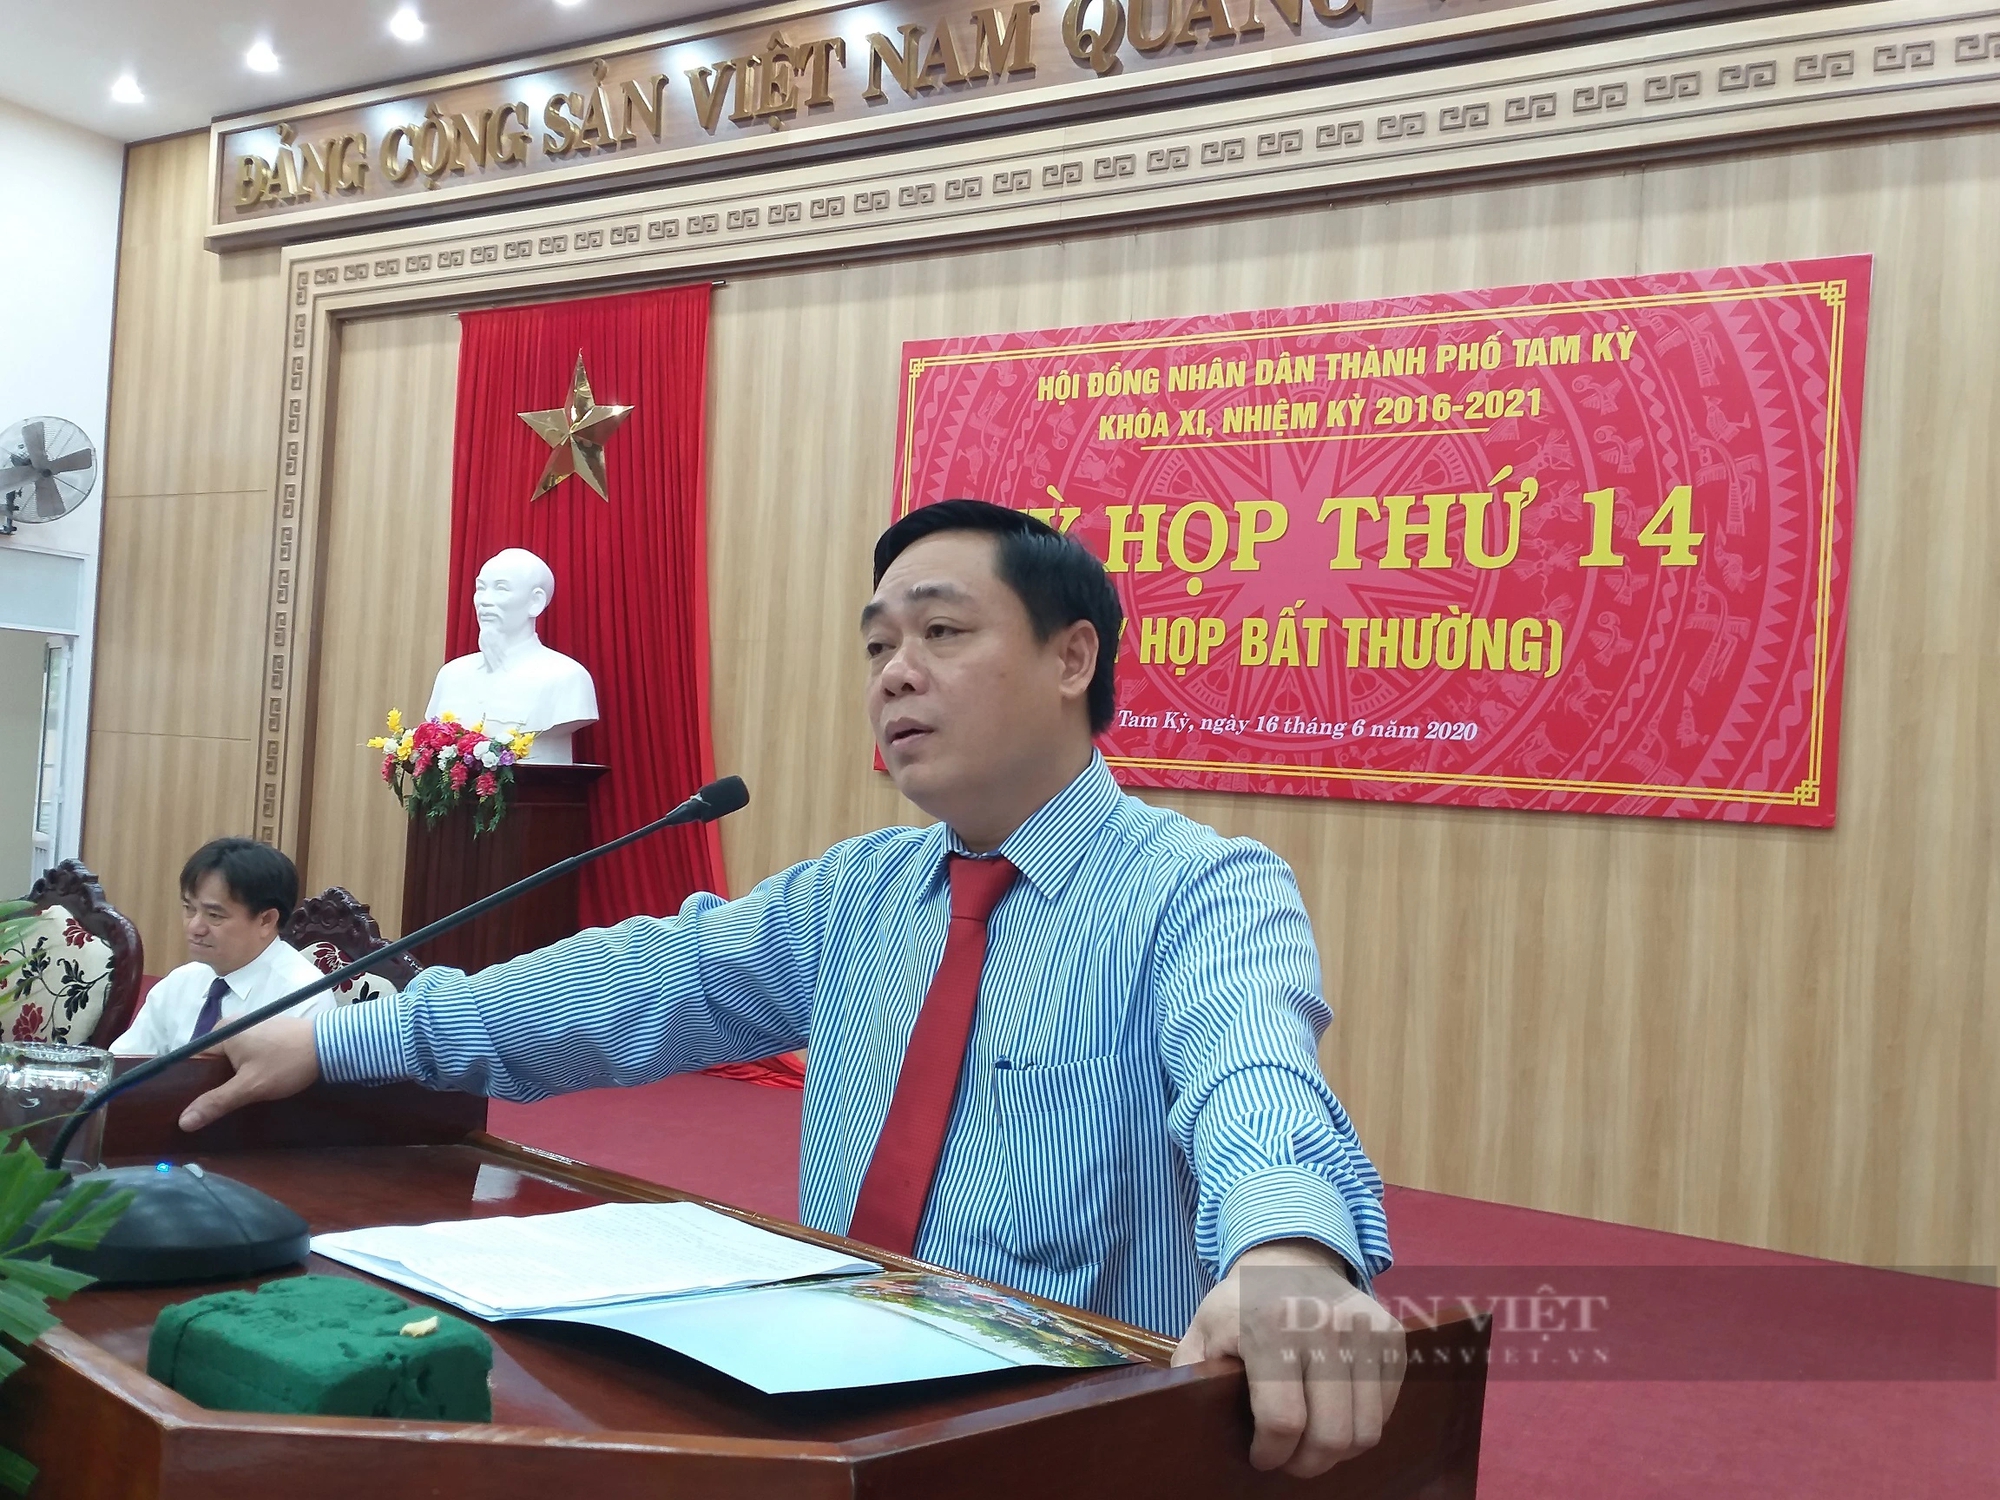 Chủ tịch UBND TP Tam Kỳ Bùi Ngọc Ảnh được bổ nhiệm làm Giám đốc Sở Tài nguyên và Môi trường tỉnh Quảng Nam- Ảnh 1.